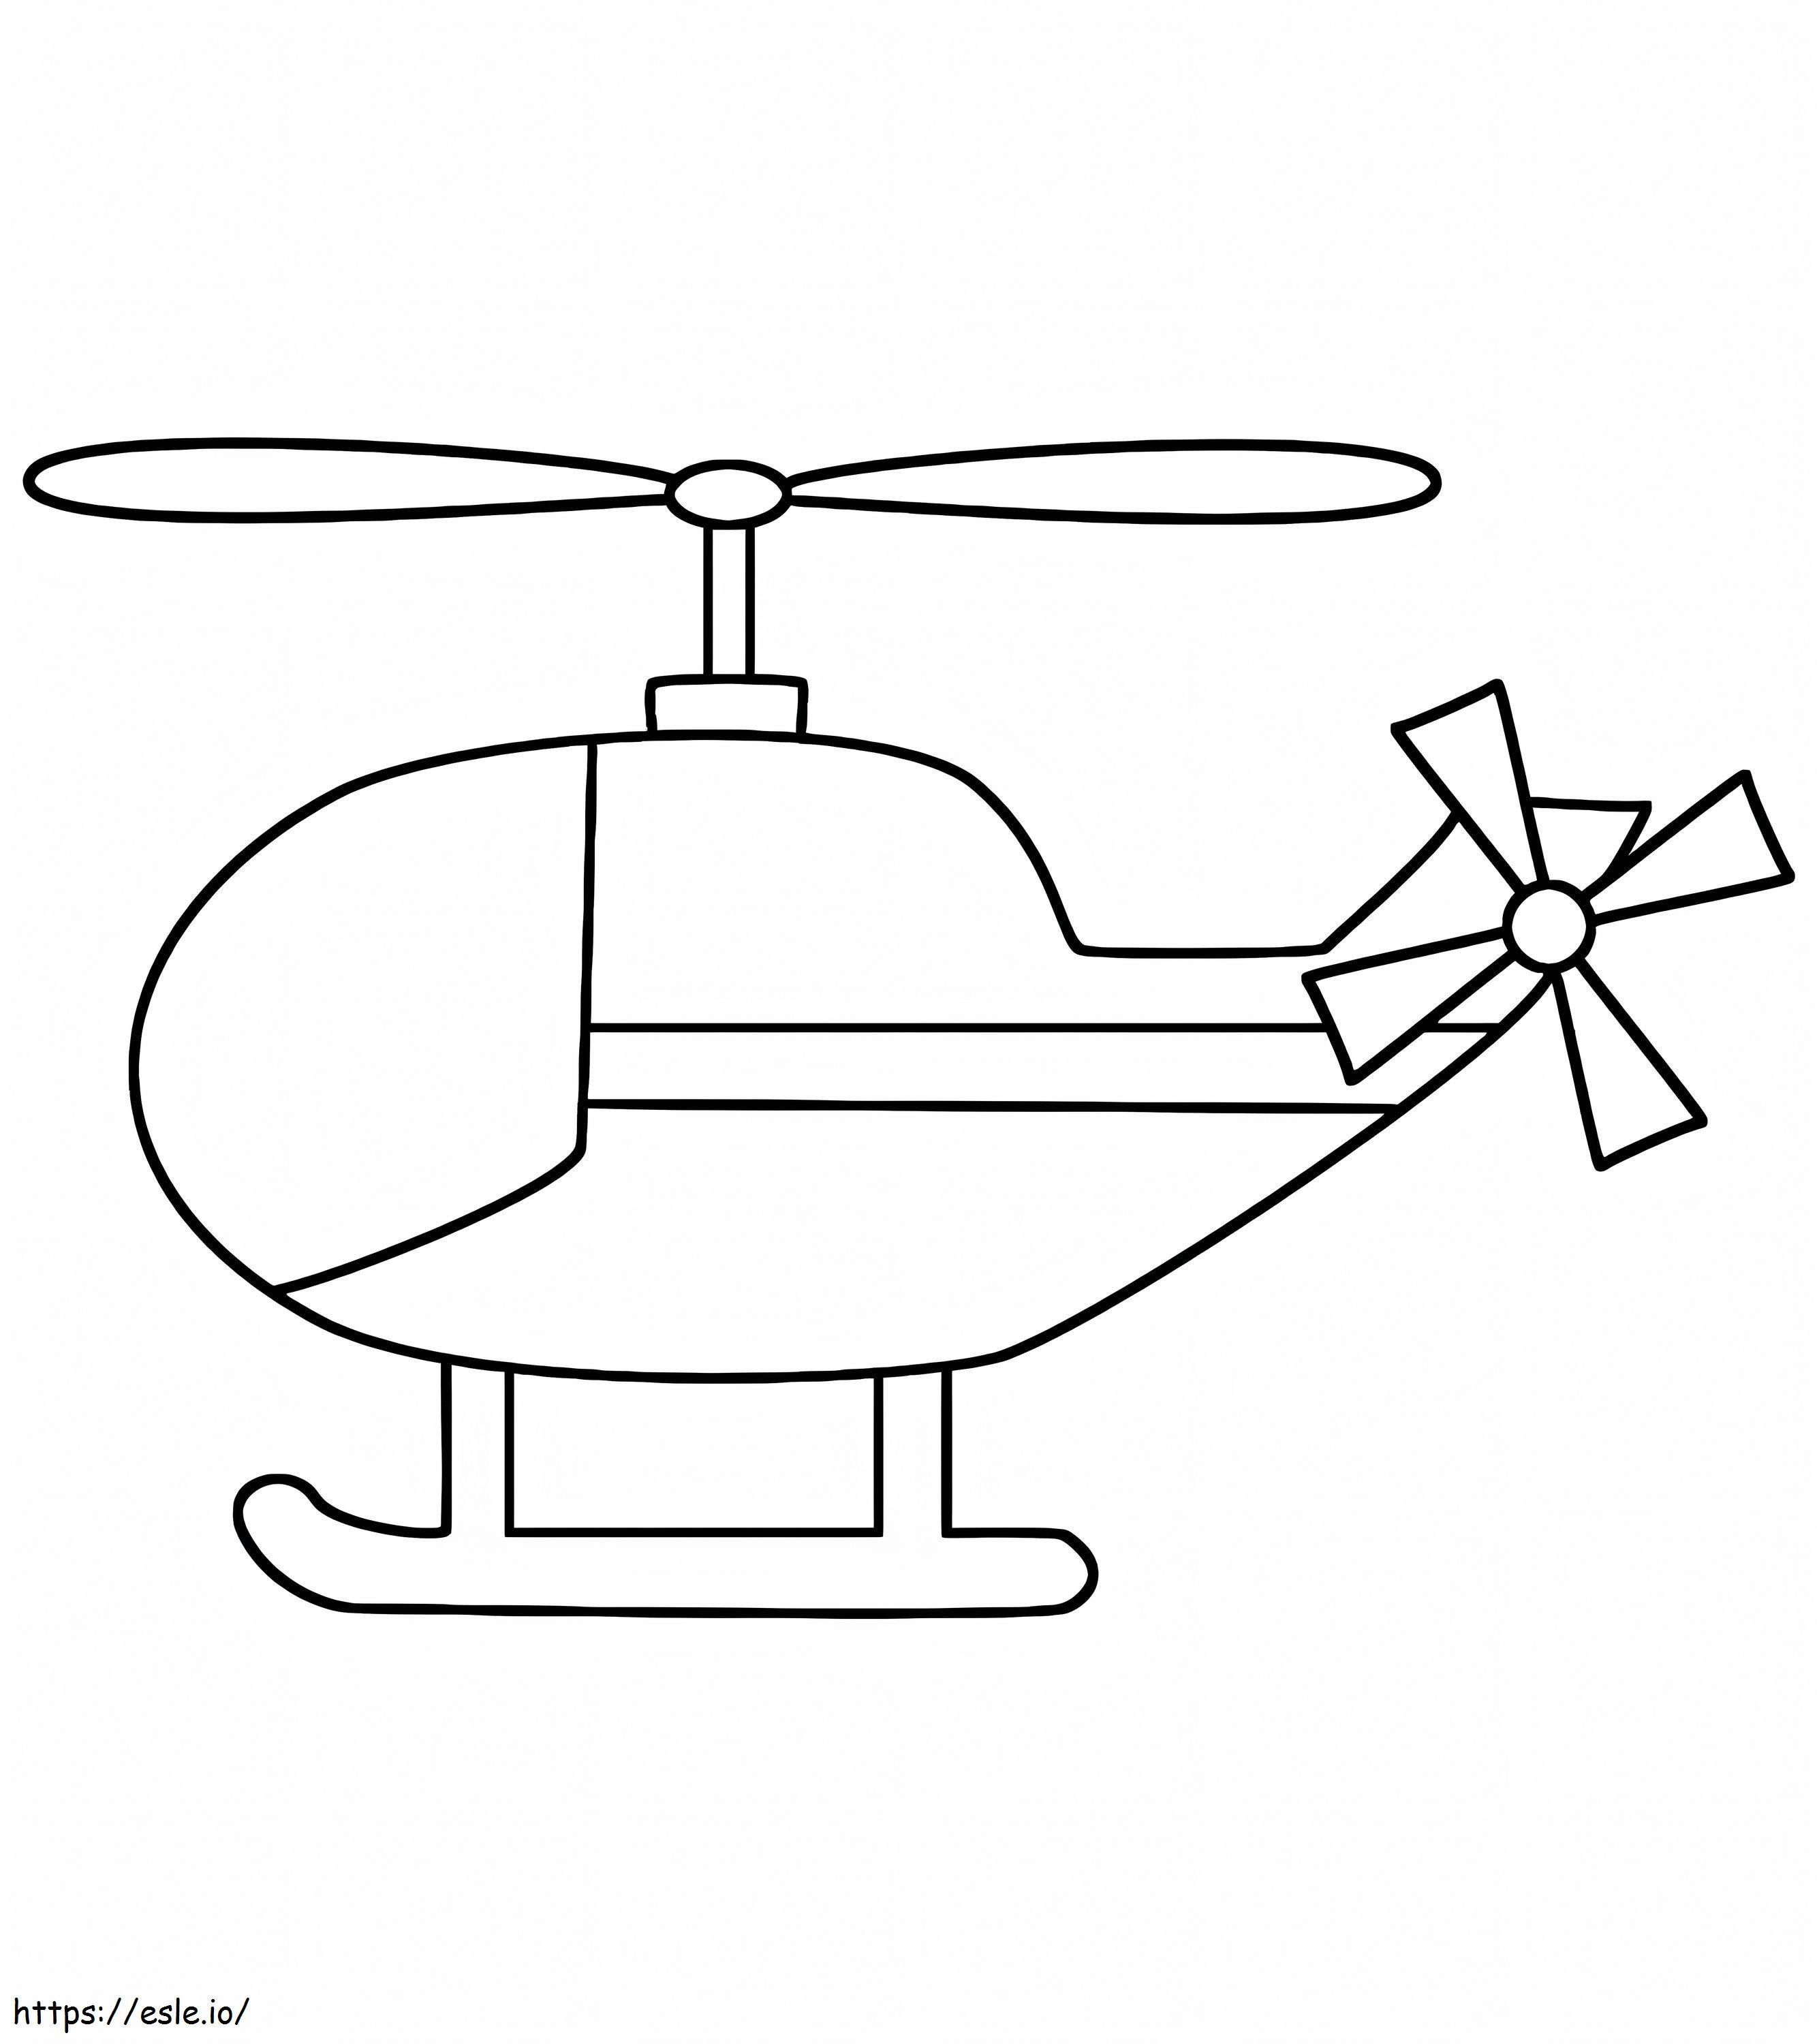 Halaman Mewarnai Helikopter Untuk Anak Kecil Anda Gambar Mewarnai